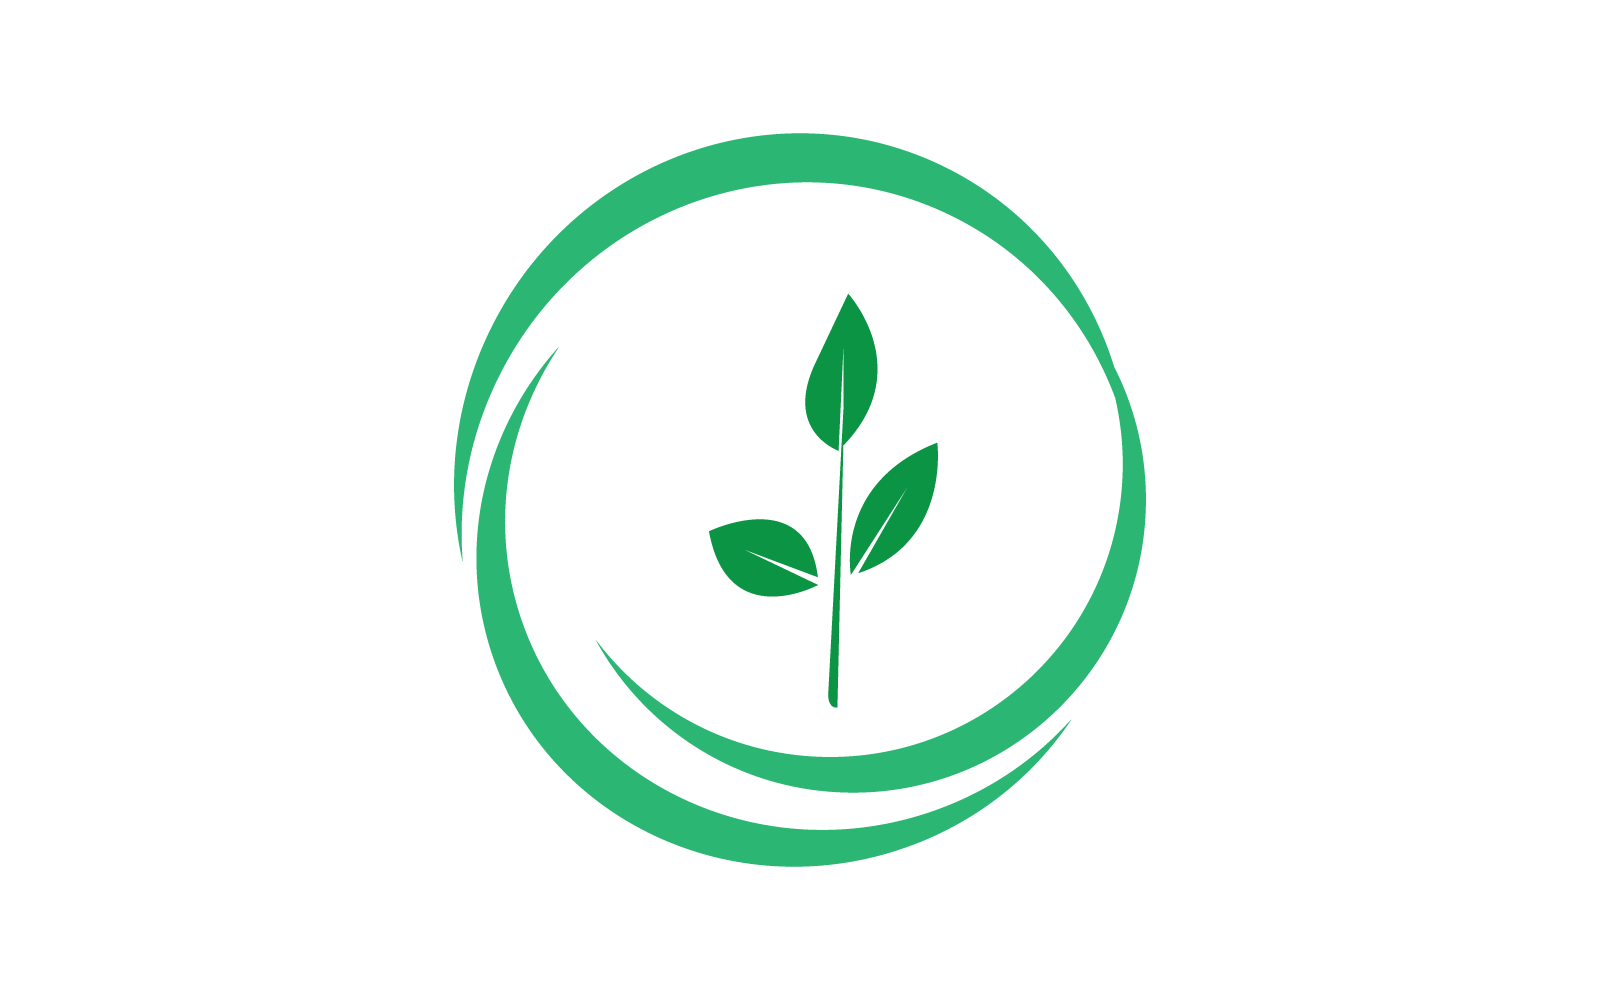 Green leaf illustration nature logo template design